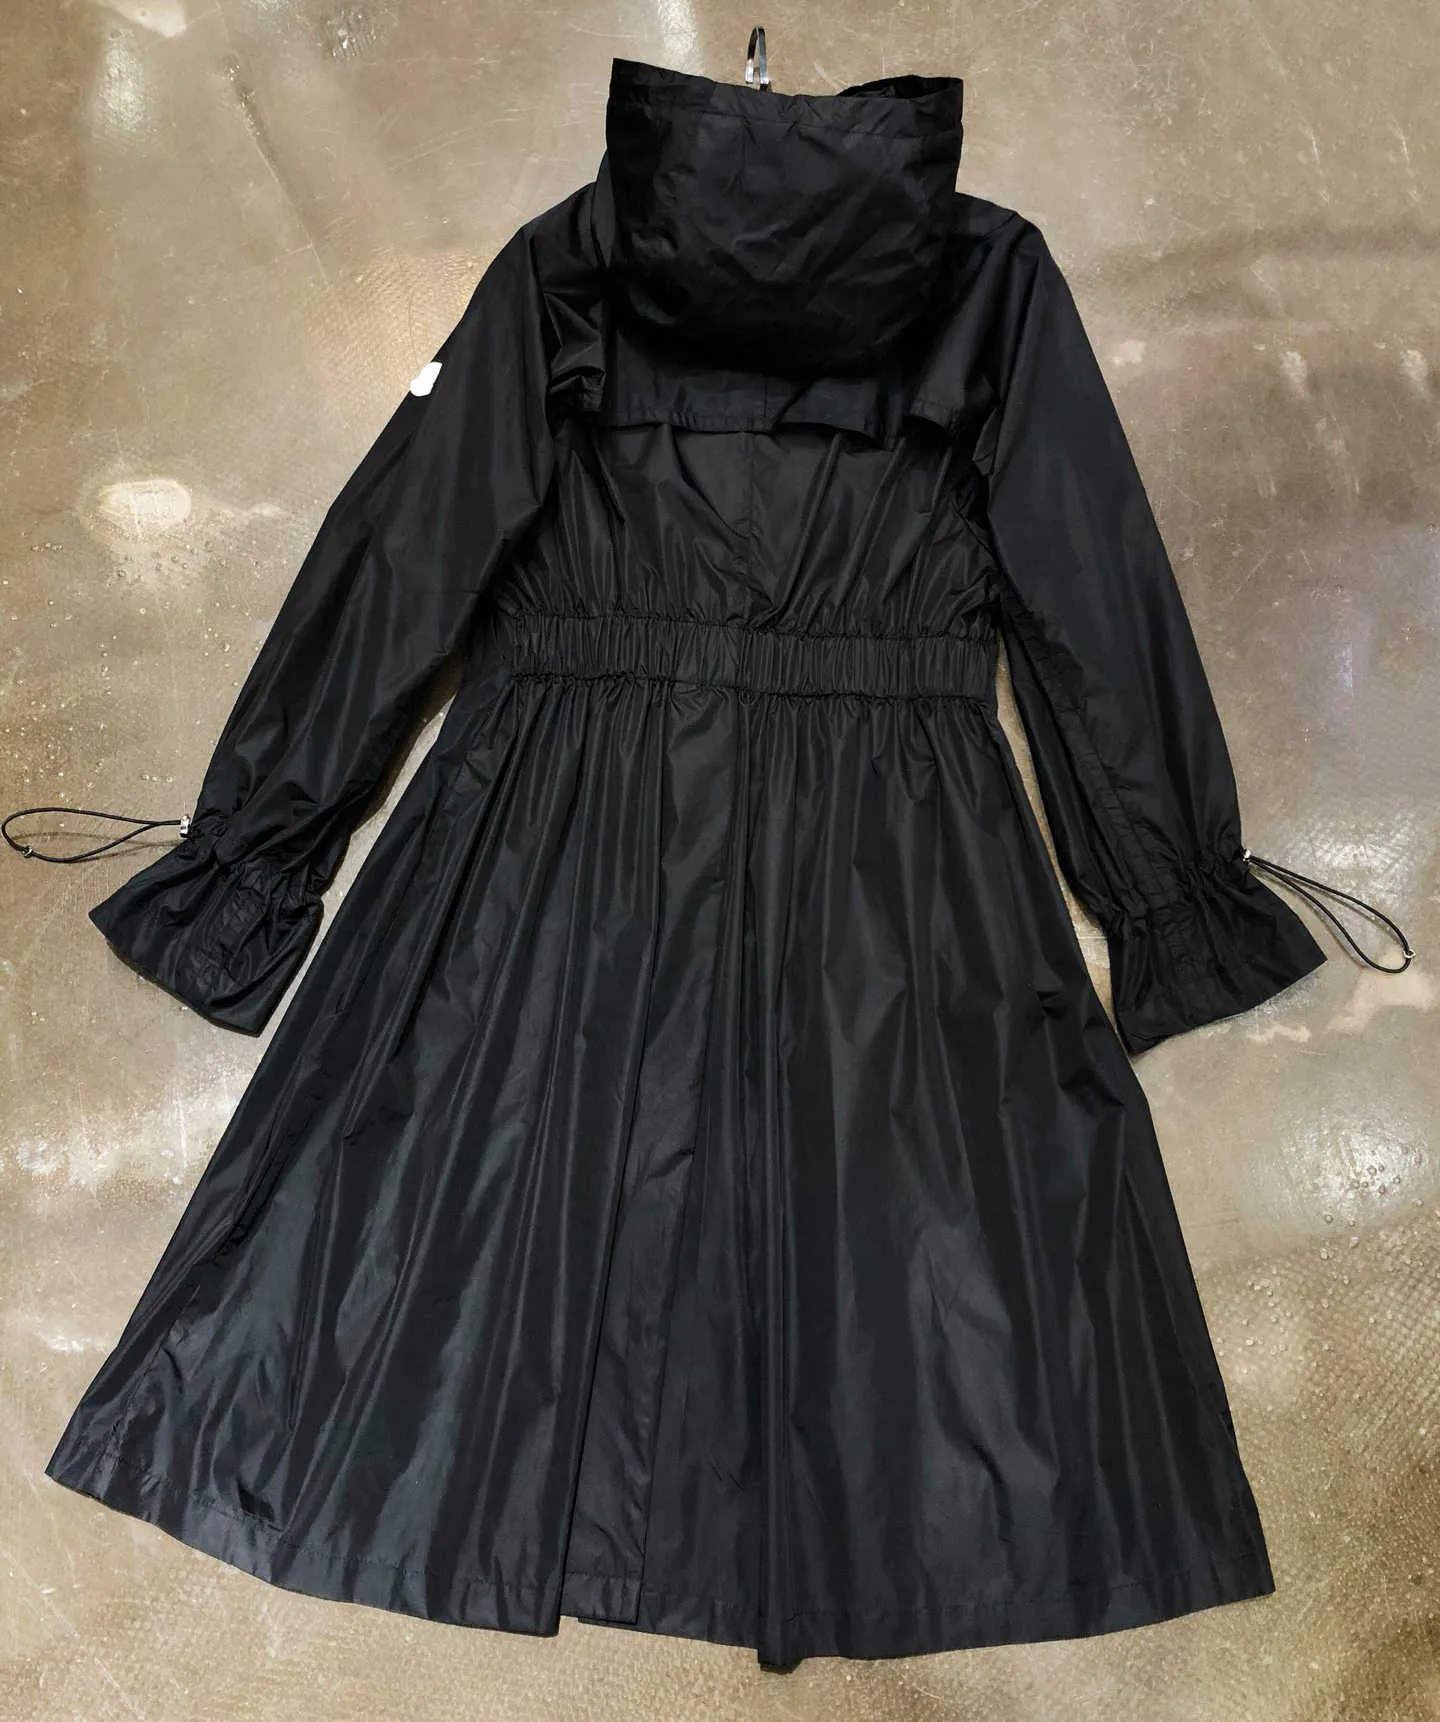 Tasarımcı Kadın Trench Ceketleri Palto Kapşonlu Nefes Alabilir Güneş Koruma Giysileri İşlemeli Kol Bantları Rüzgar Derbazı Sıradan Fit Güneş Koruyucu Ceket